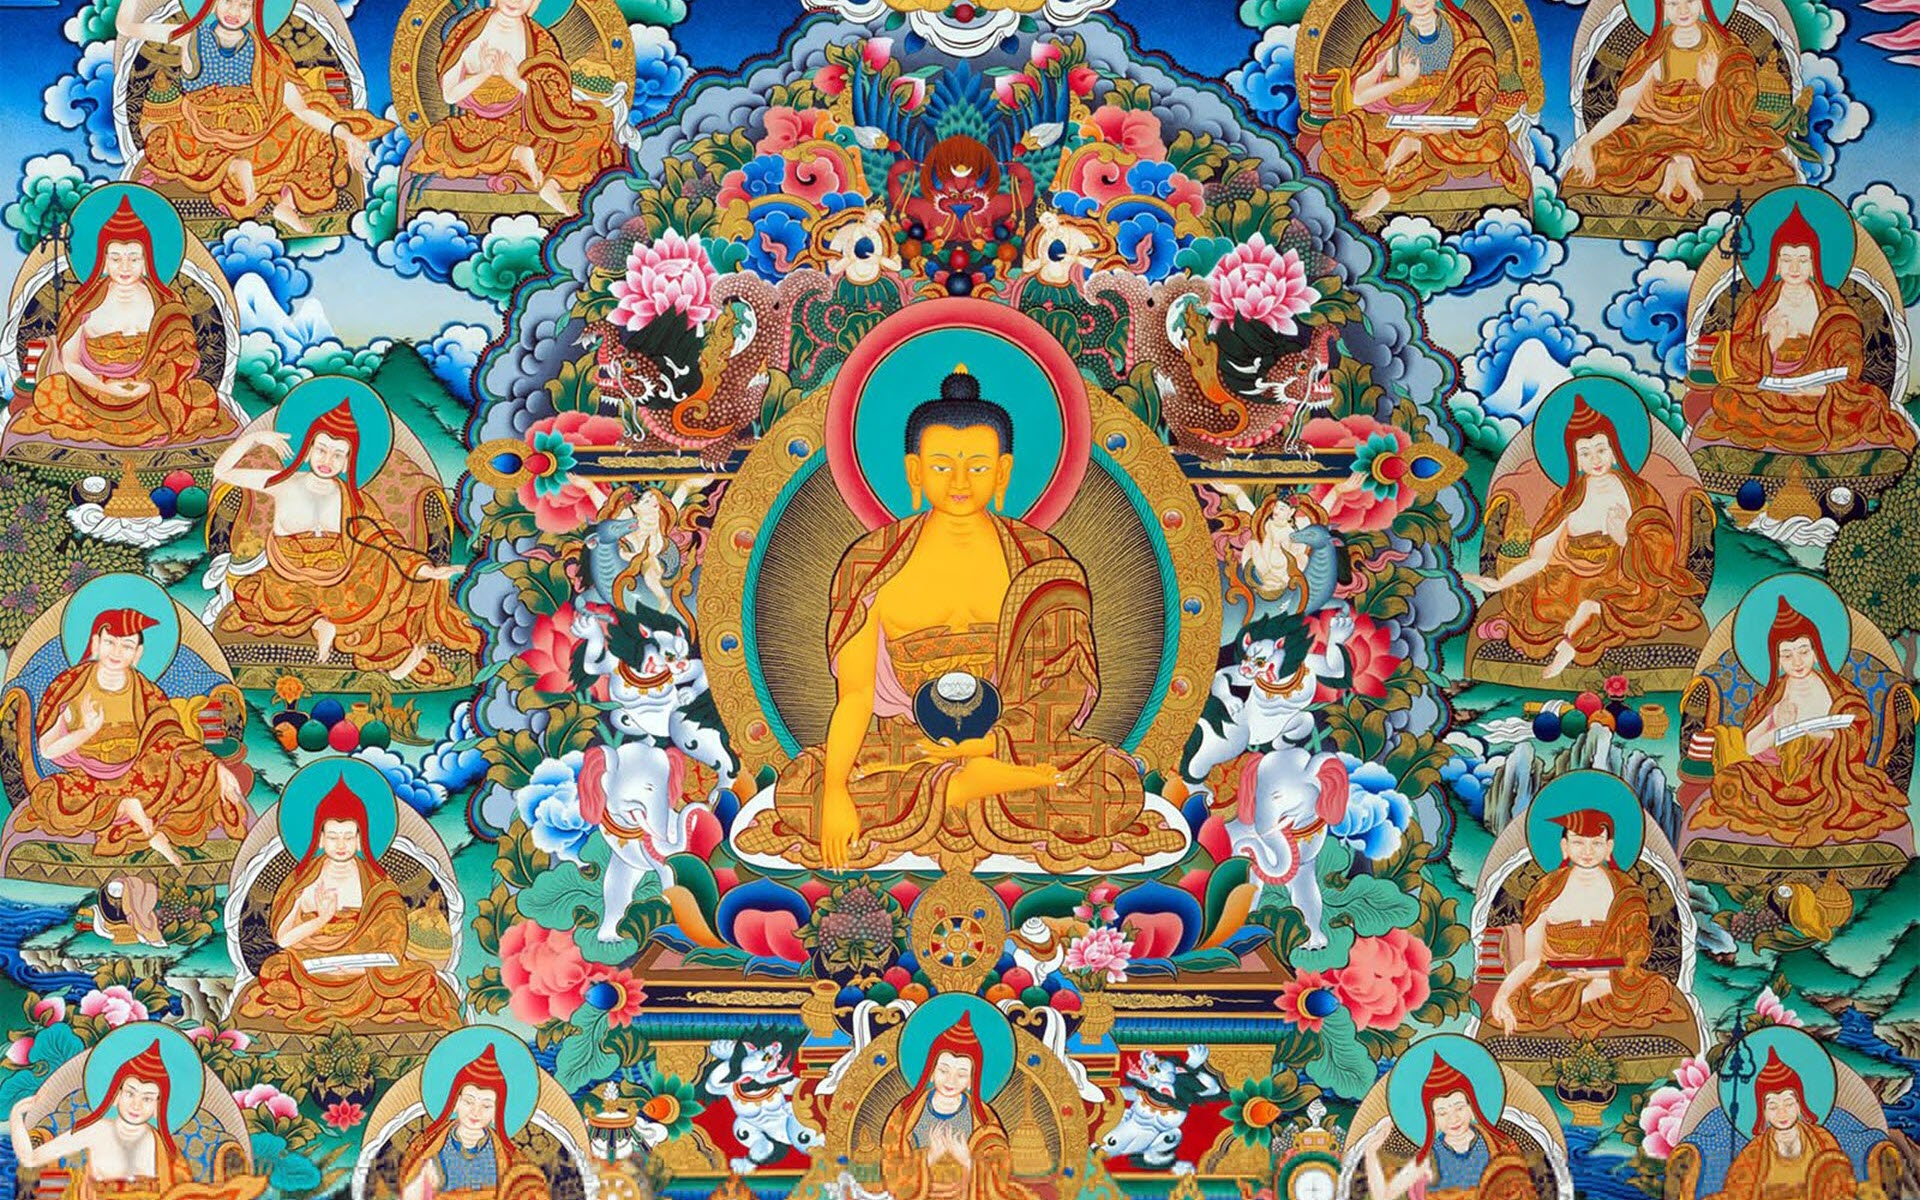 Hình nền Phật Dược Sư